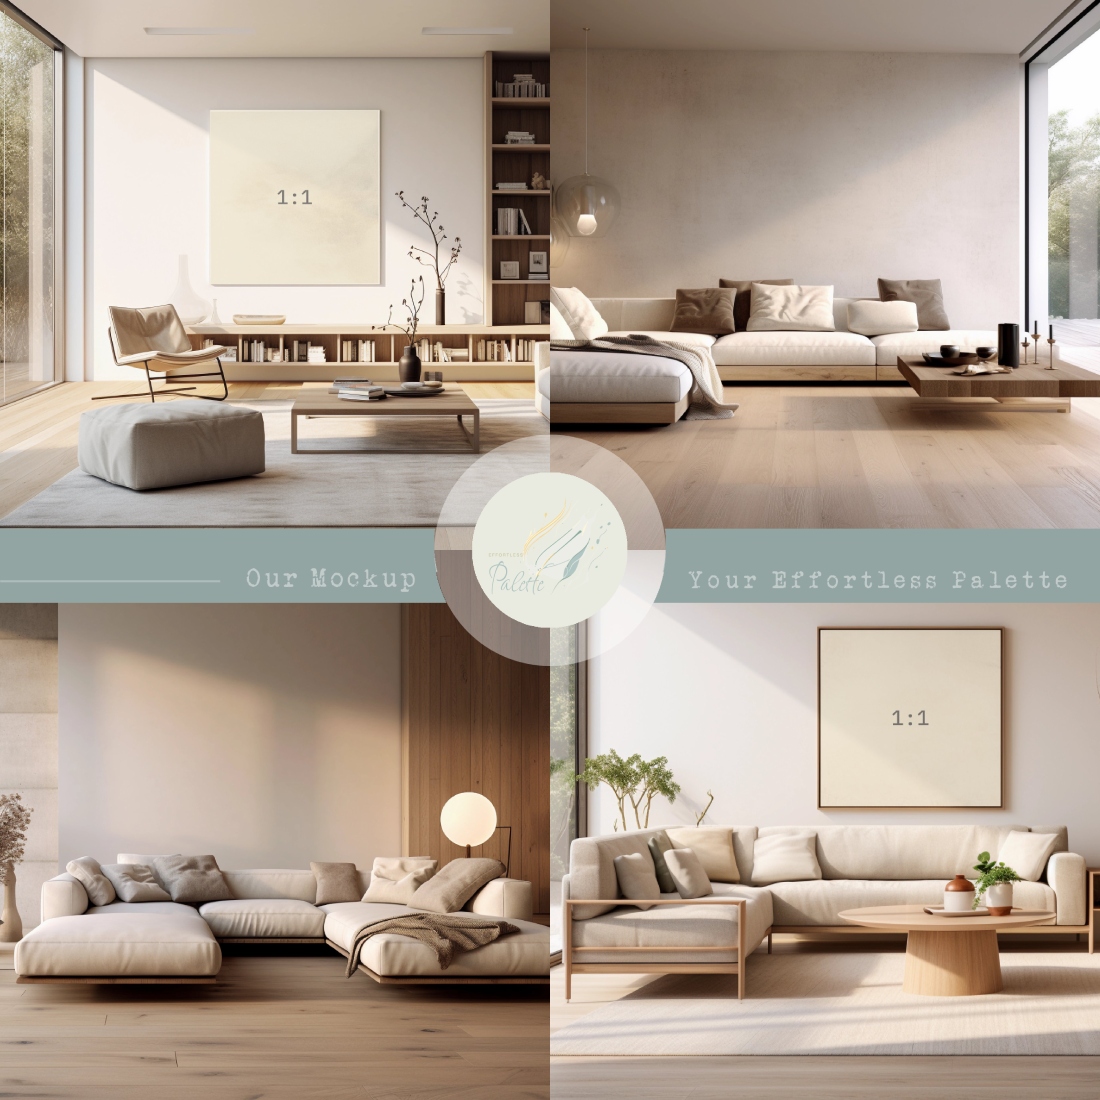 Four Frame Mockup Bundle, modern interior living room, jpg png & psd w/ smart object cover image.